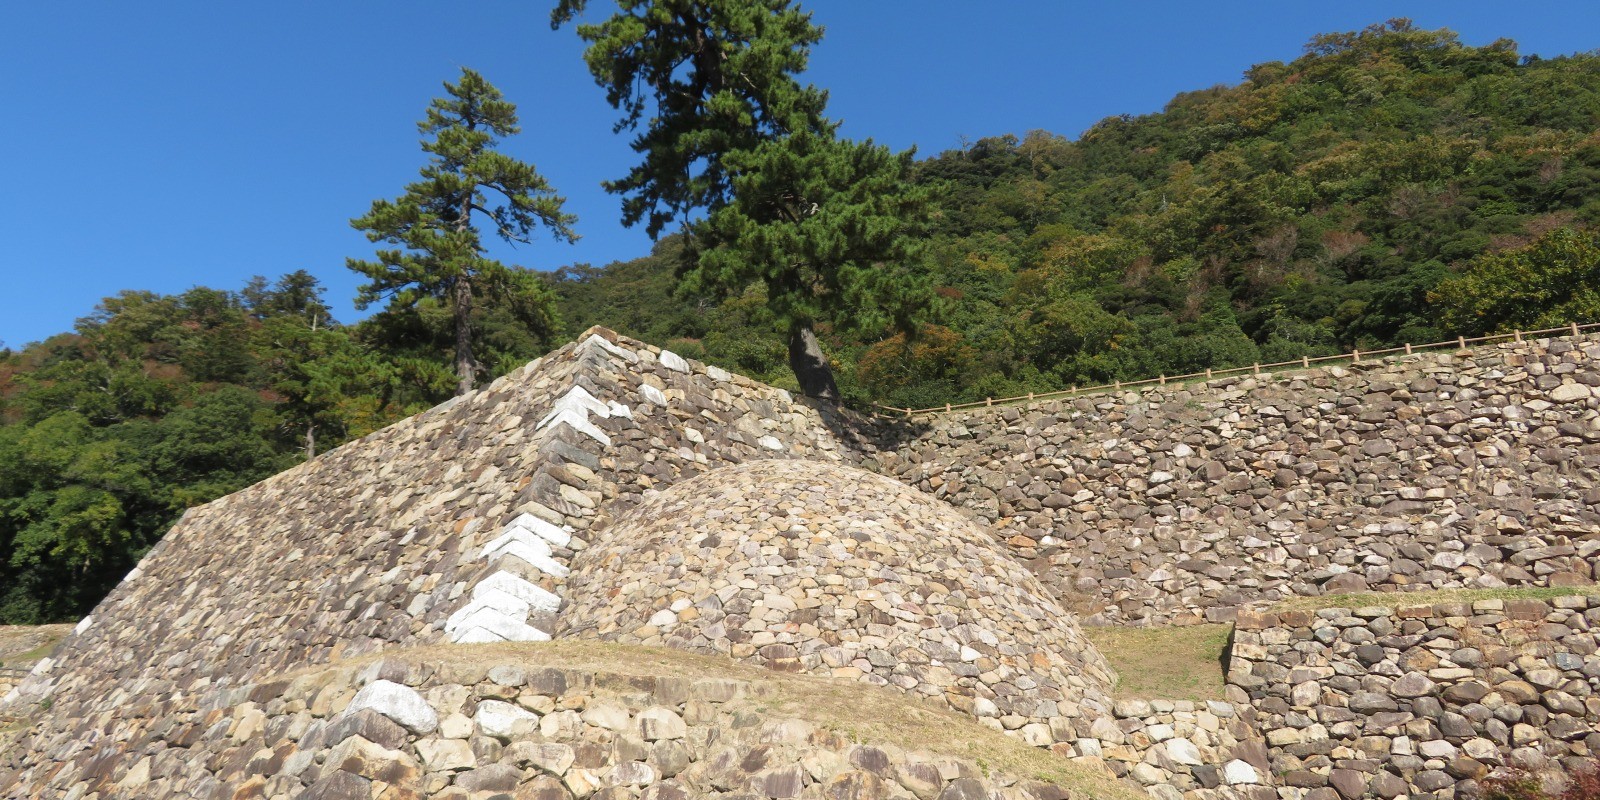 鳥取市の誇る人気の山城「鳥取城跡」